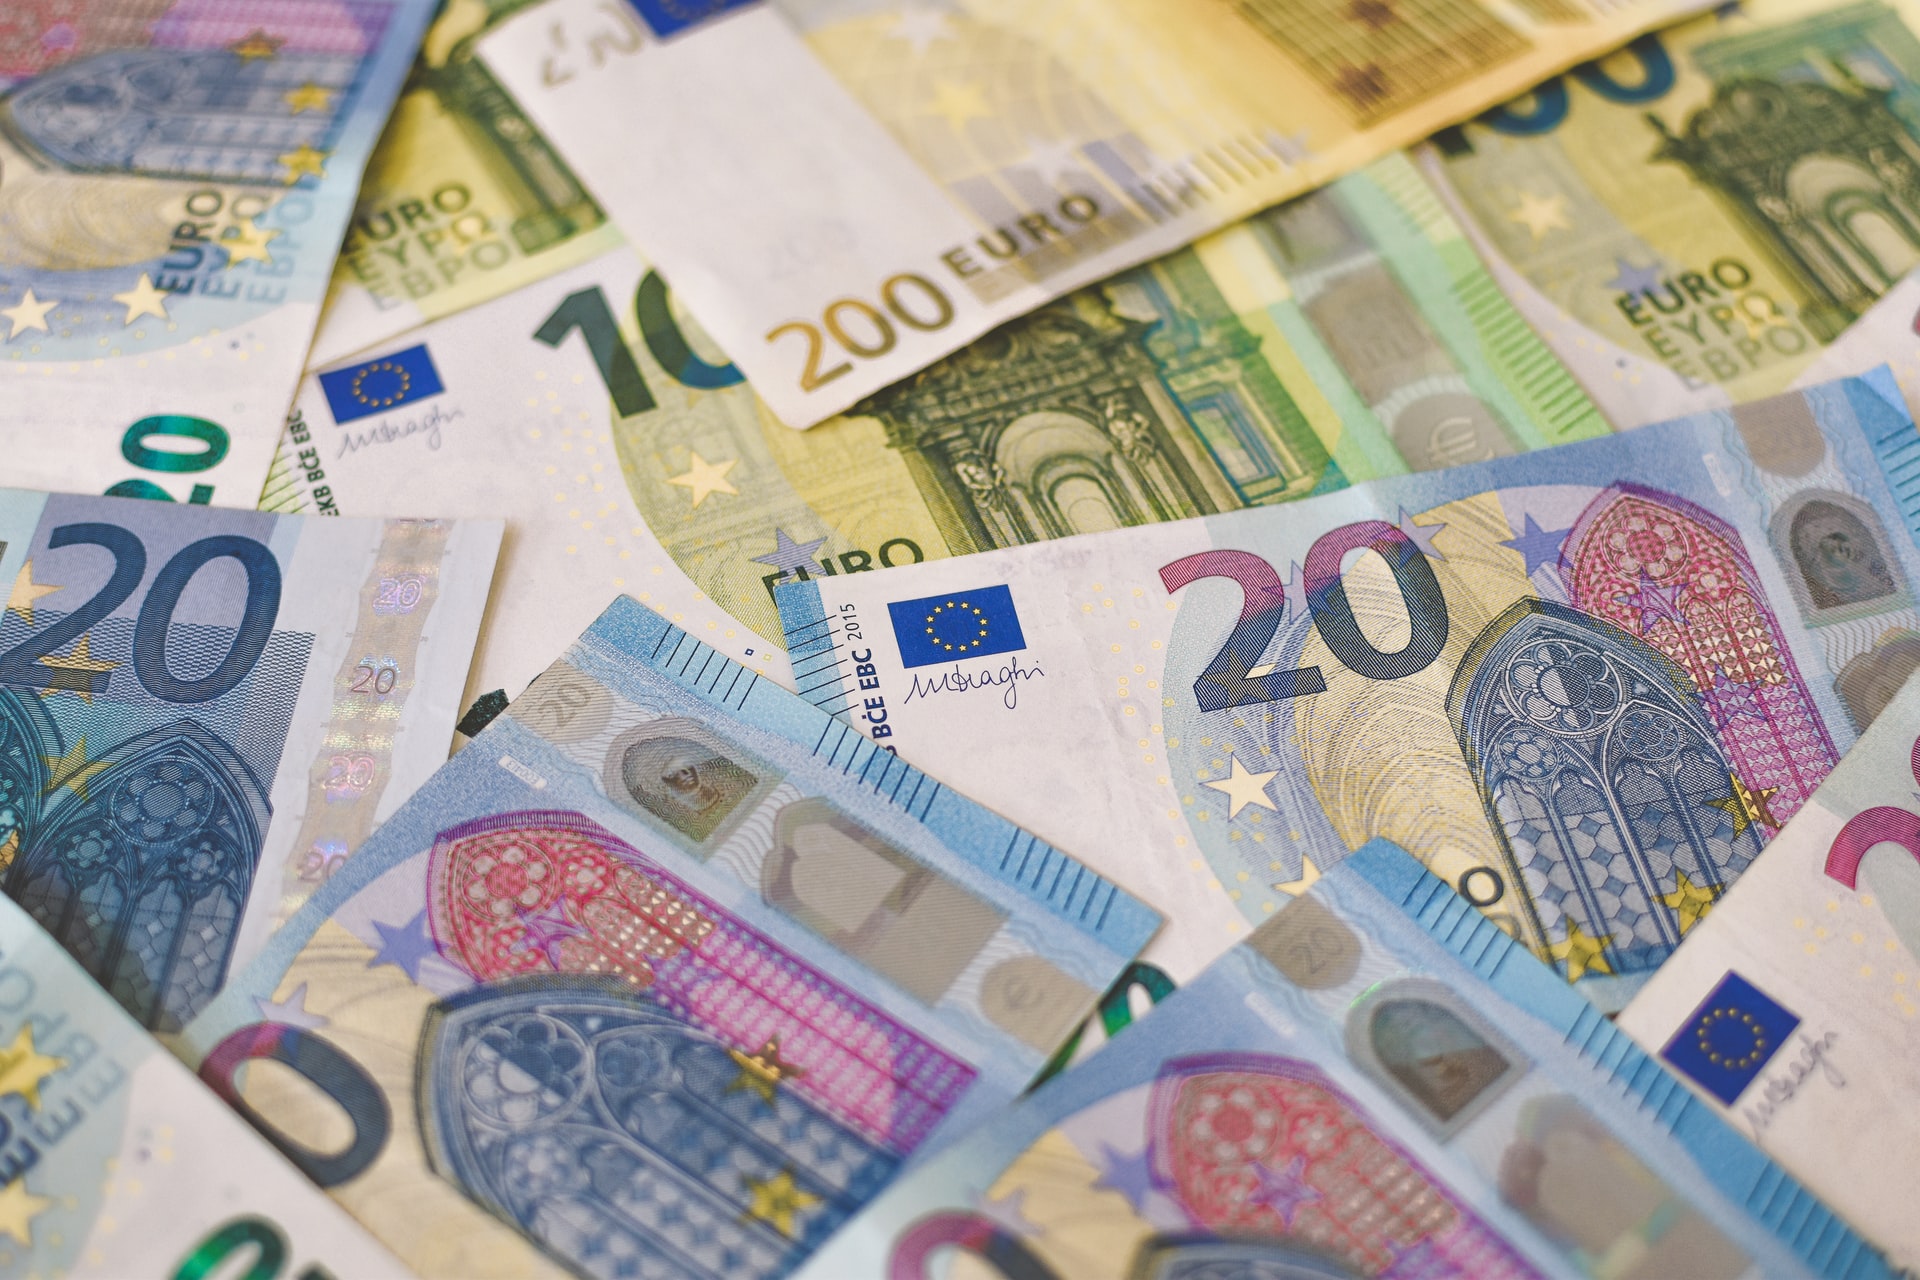 Αρχή για το Ξέπλυμα: Απάτη 30 εκατ. ευρώ με κοινοτικές επιδοτήσεις – Εμπλέκονται 26 φυσικά πρόσωπα και 16 εταιρείες